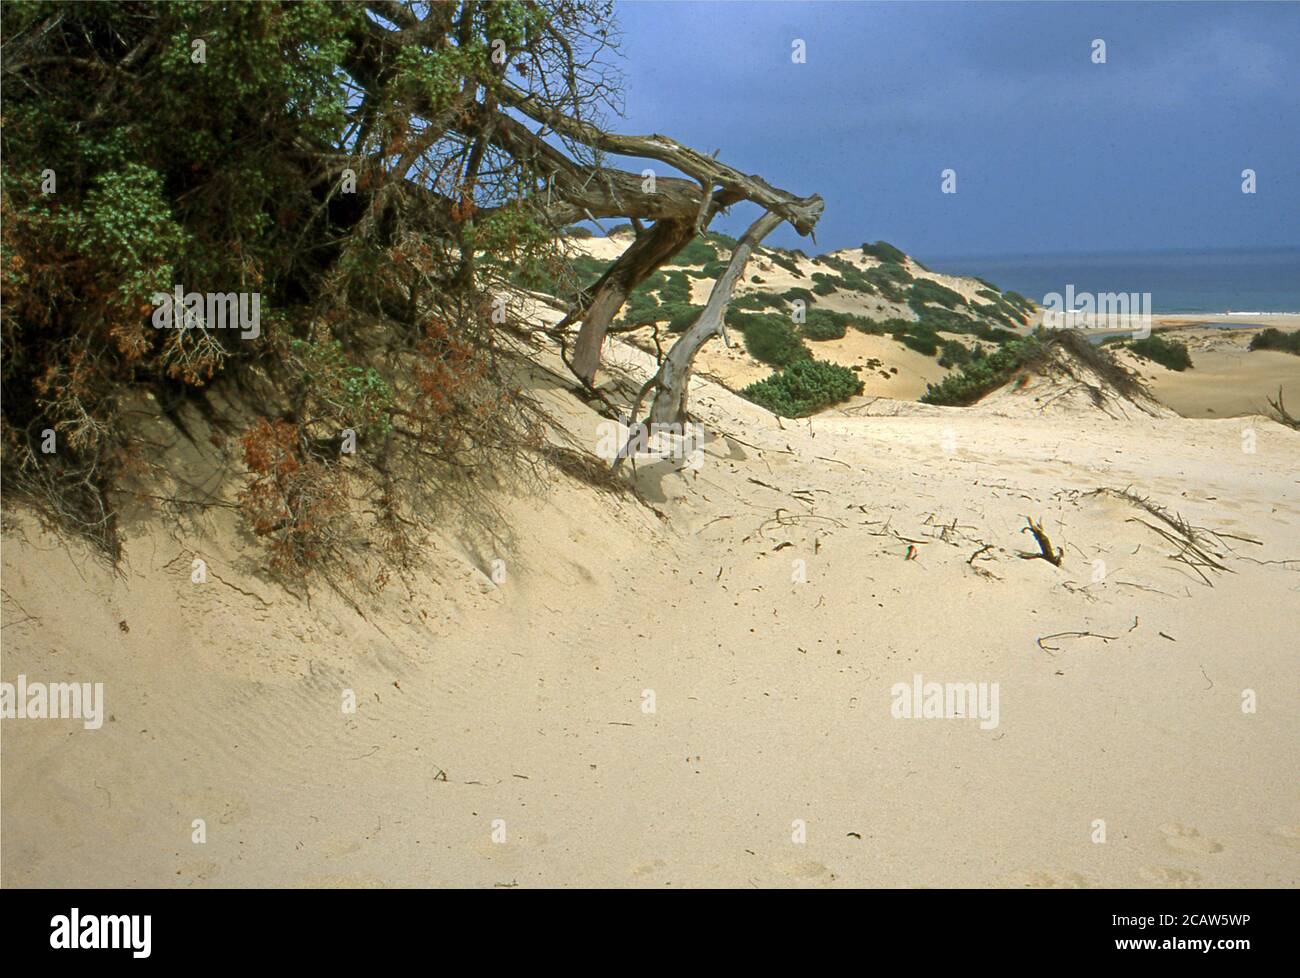 Piscinas Dünen im Süden Sardiniens (gescannt von Fujichrome Provia) Stockfoto